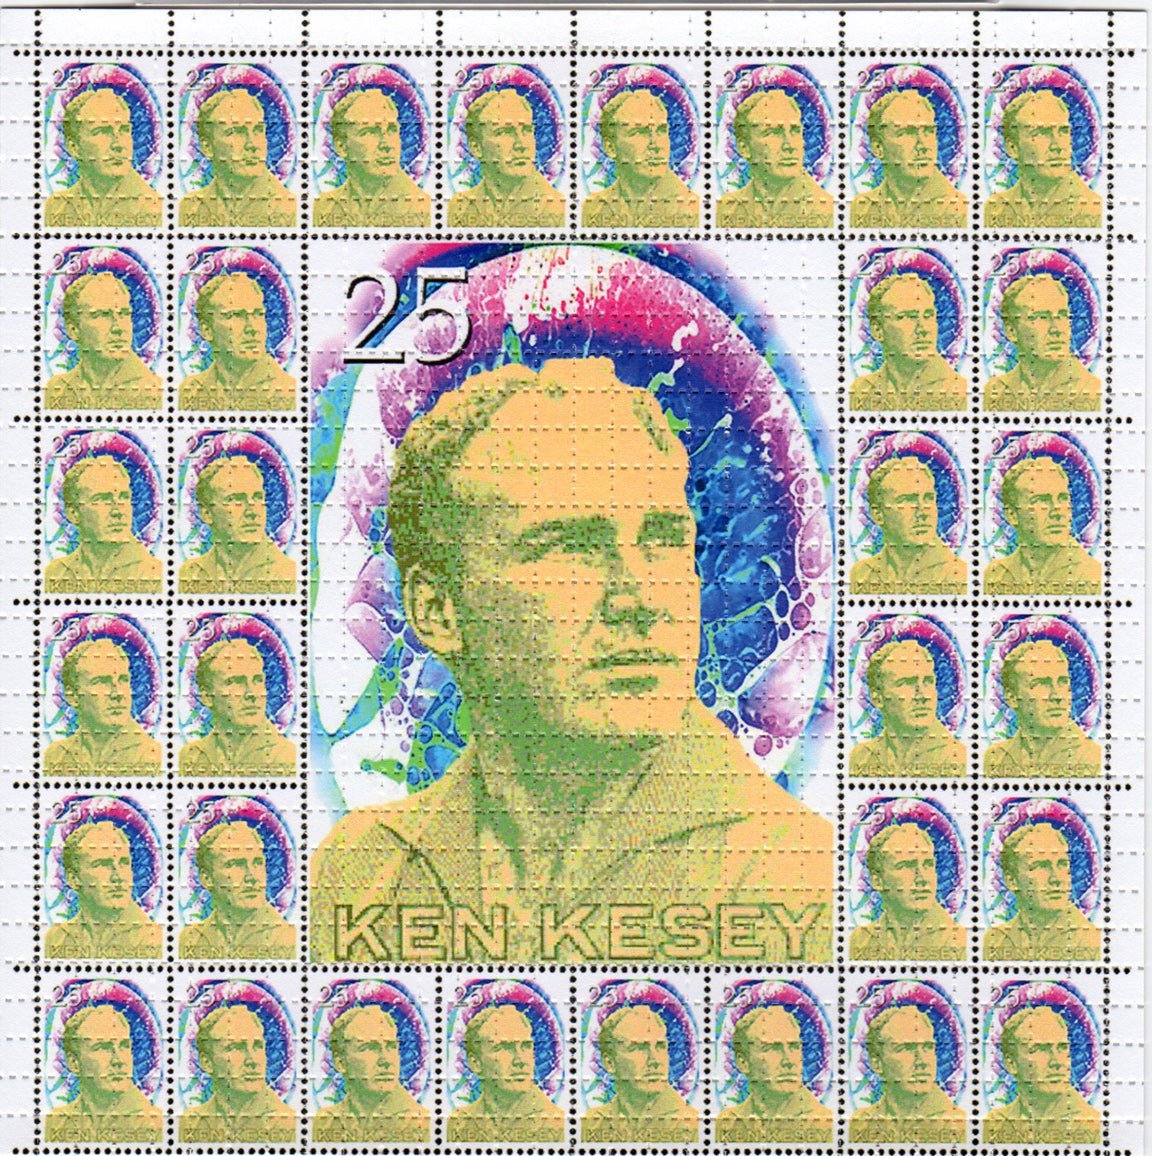 Ken Kesey Stamp LSD blotter art print